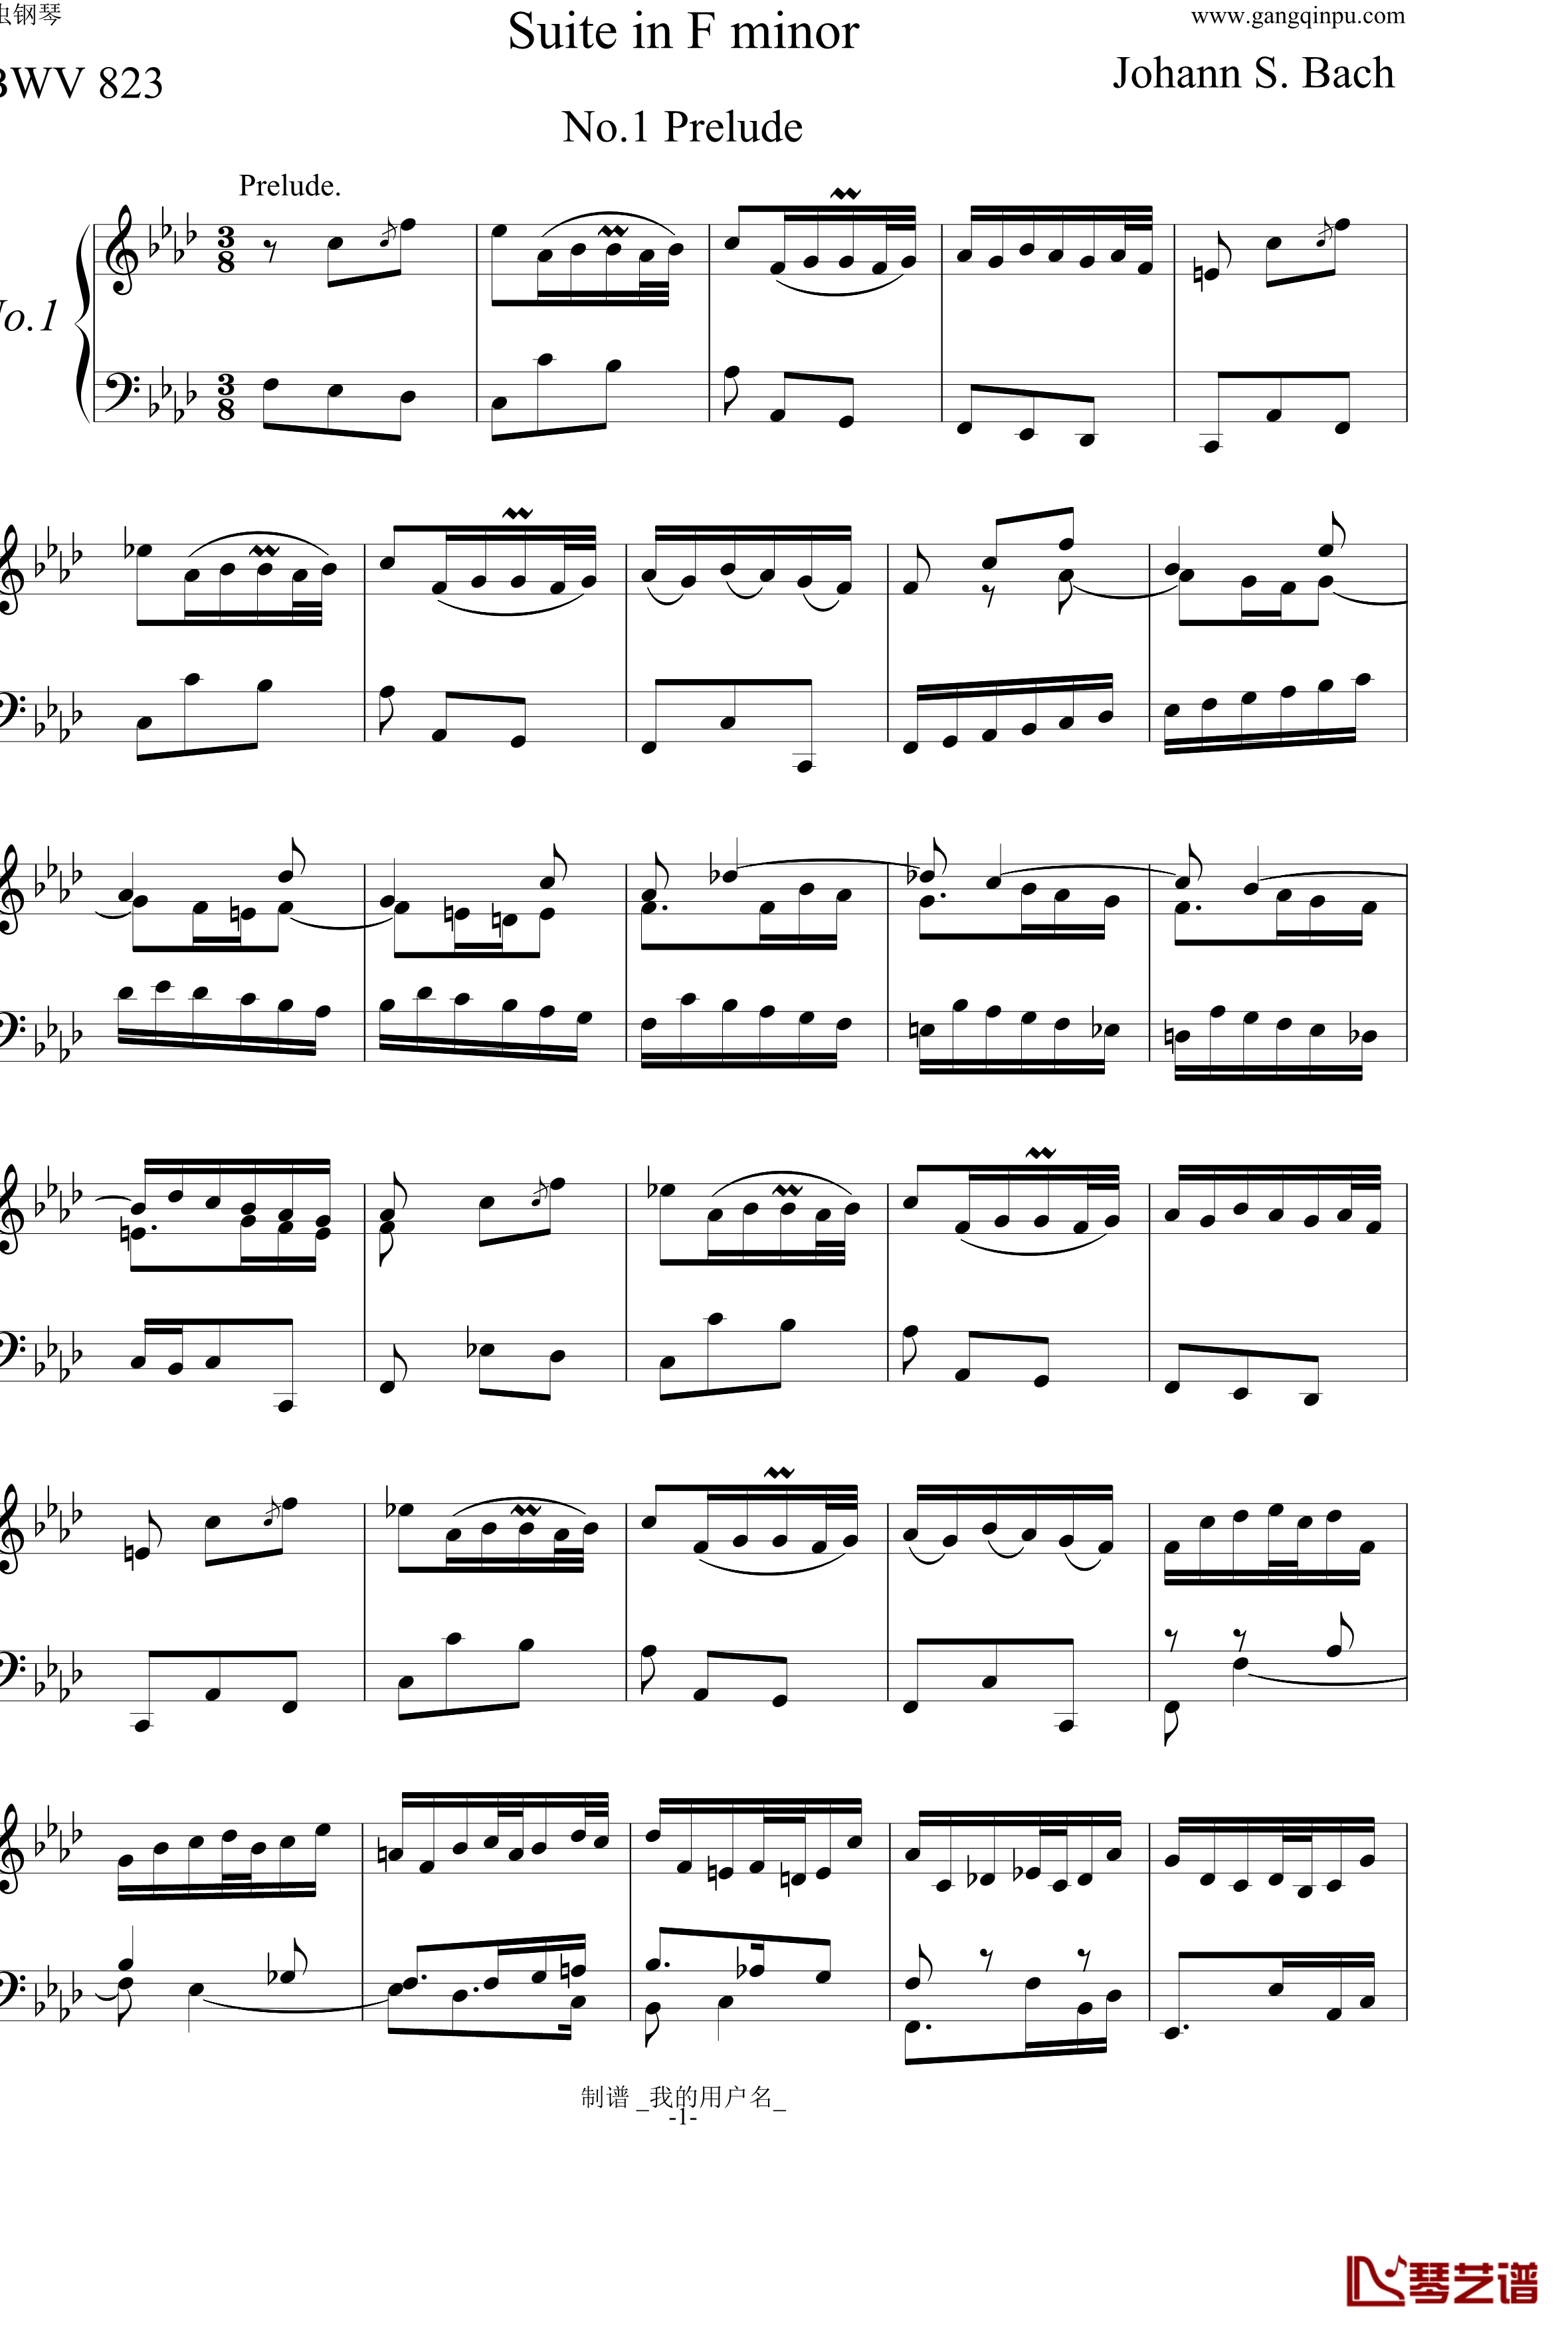 BWV823 No.1前奏曲钢琴谱-巴赫初级钢琴曲集最后一首-P.E.Bach1